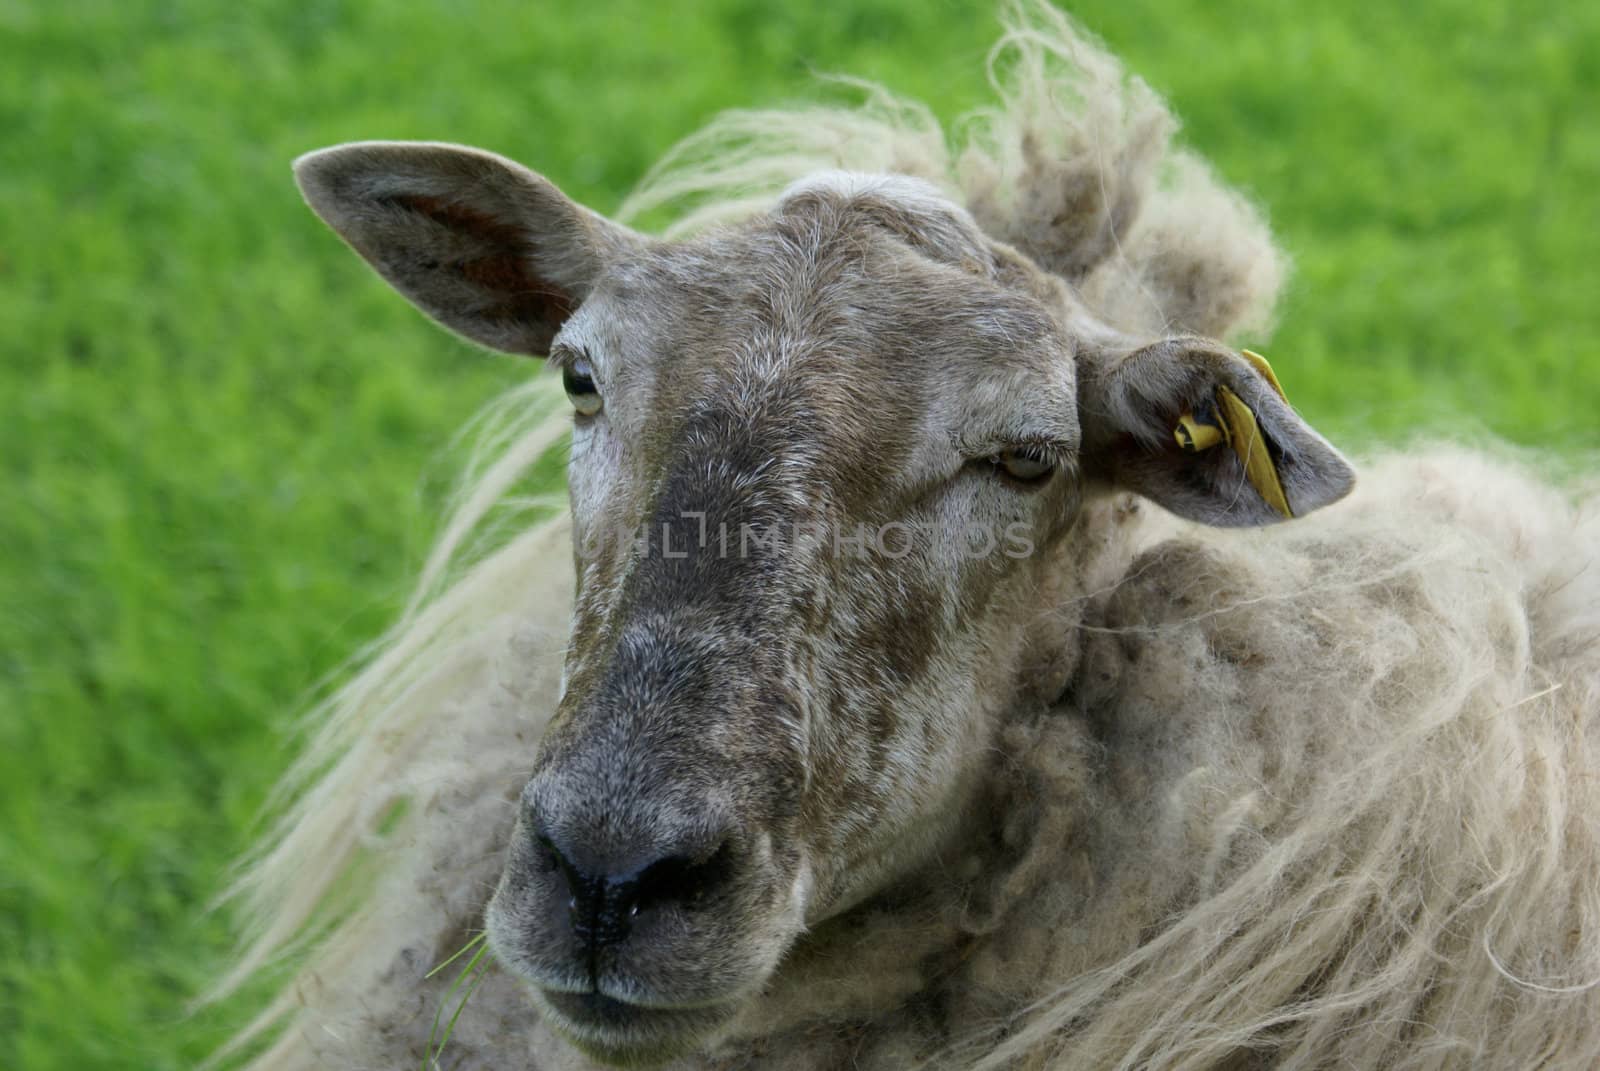 Sheep definitely needs a shear.